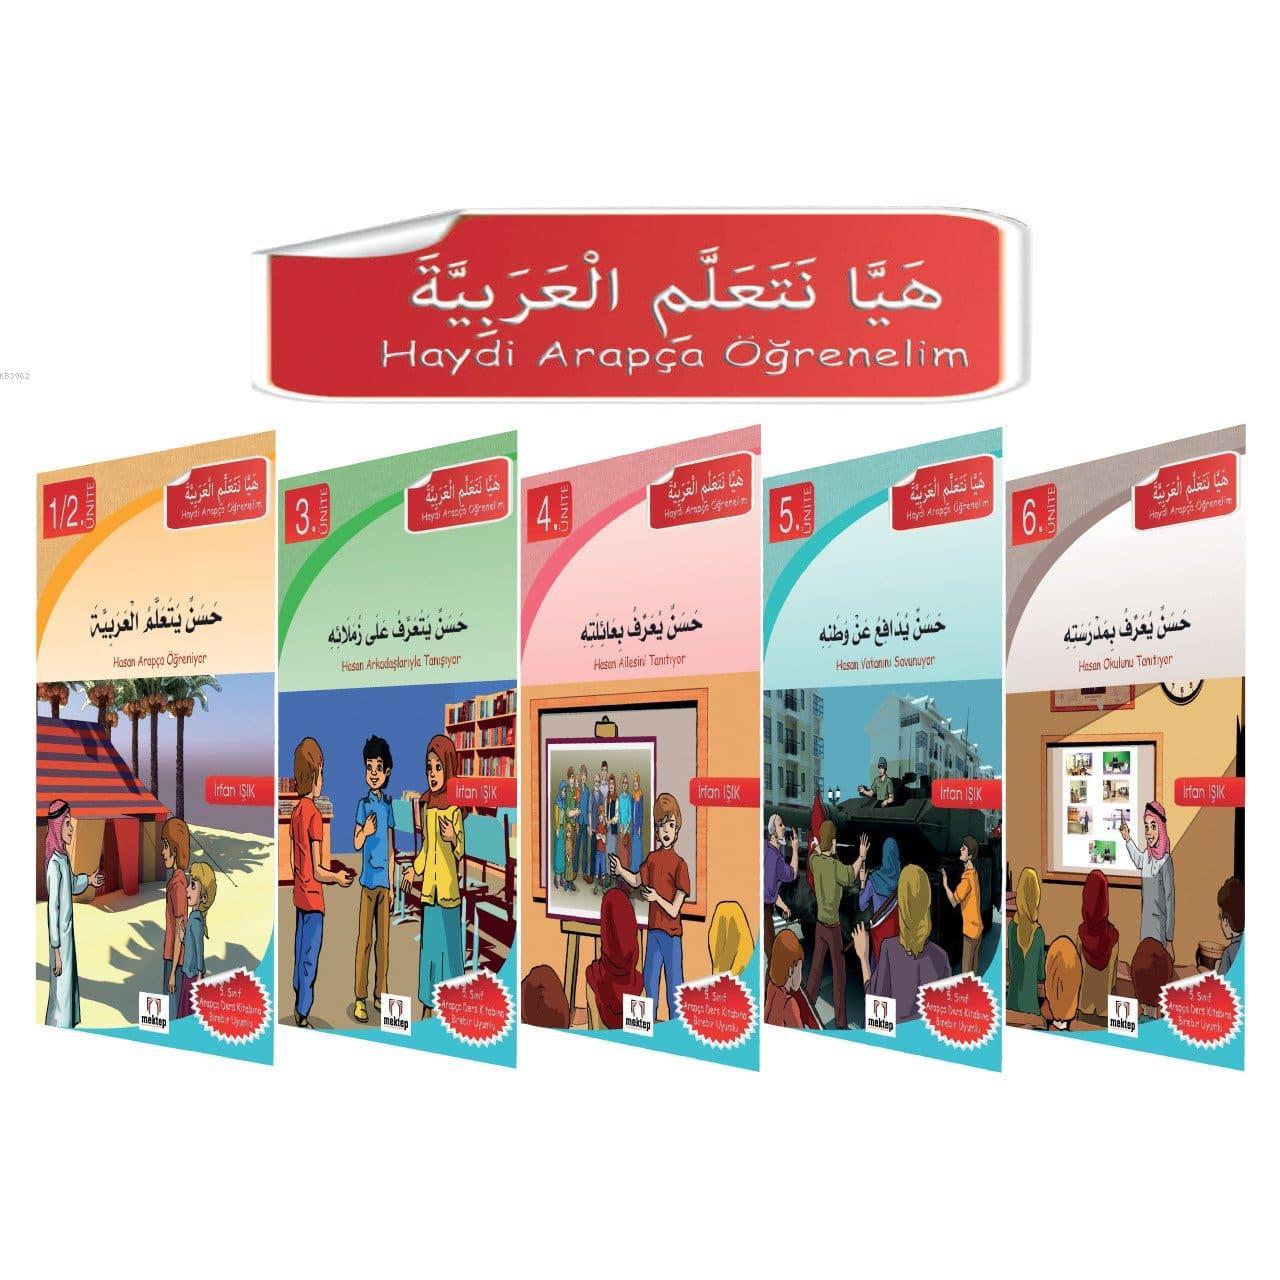 Haydi Arapça Öğrenelim - Hikaye Seti